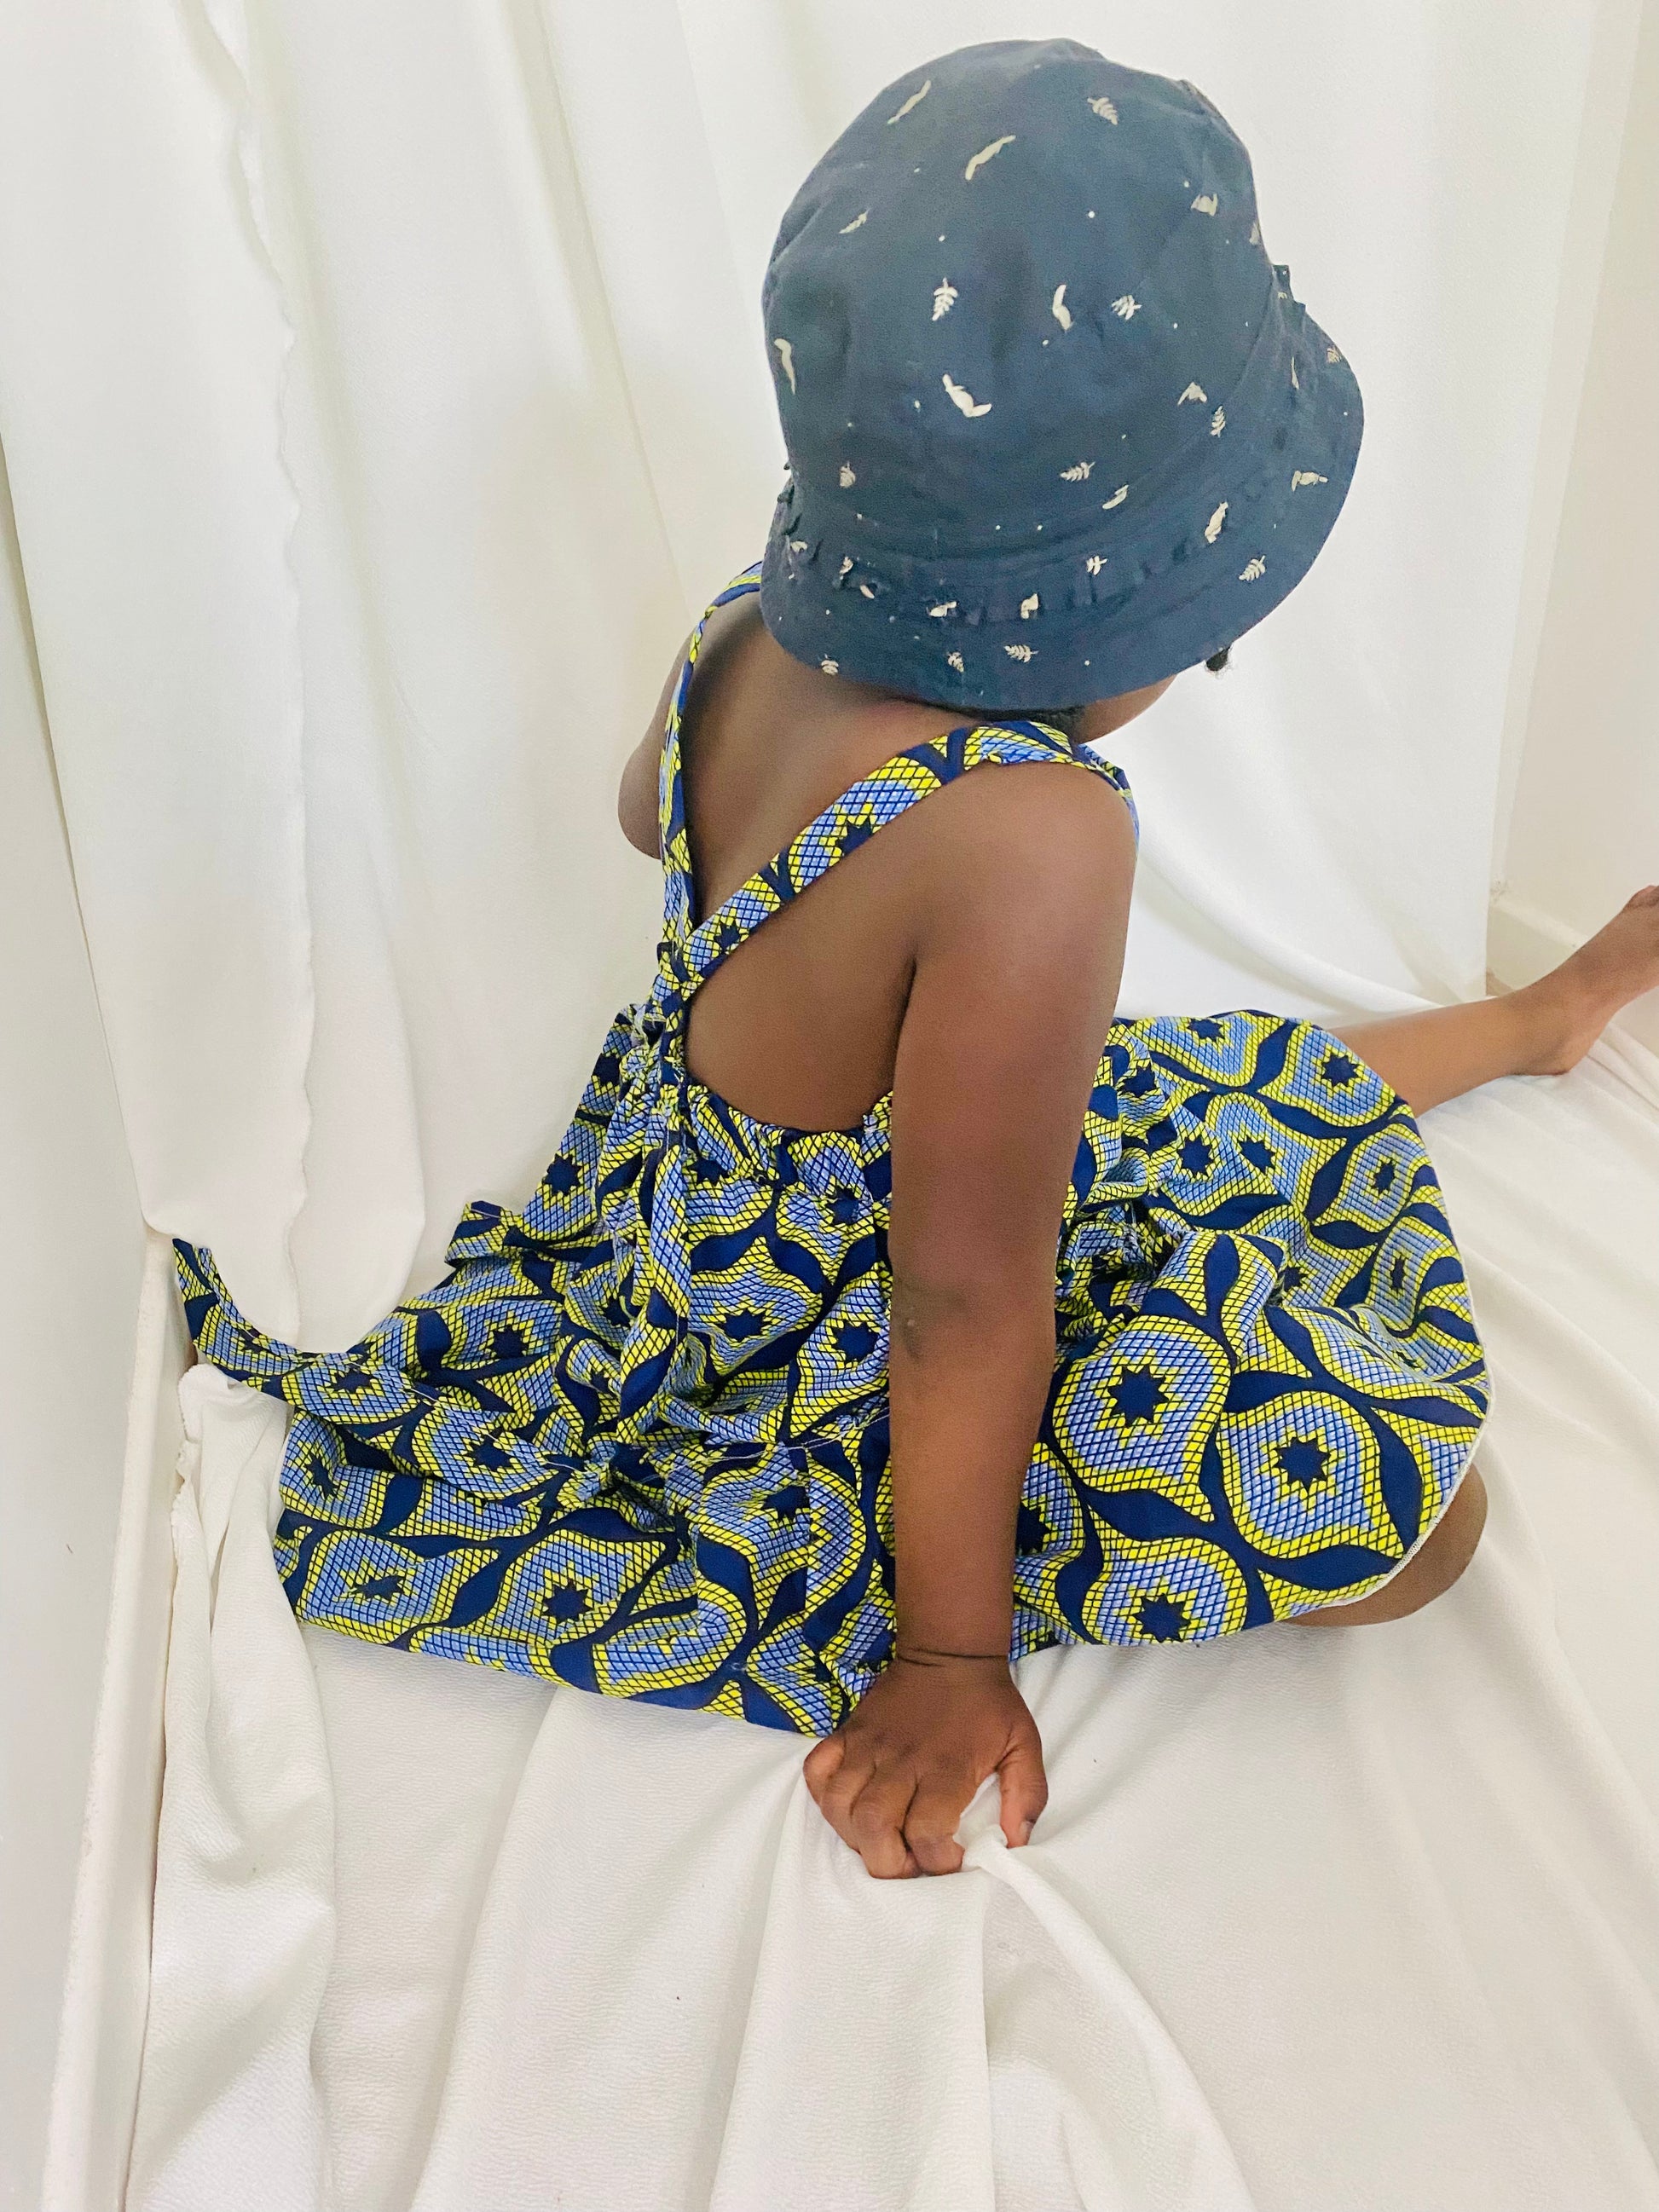 Vêtement bébé garçons 6 mois - Mode ethnique - Vêtements enfants